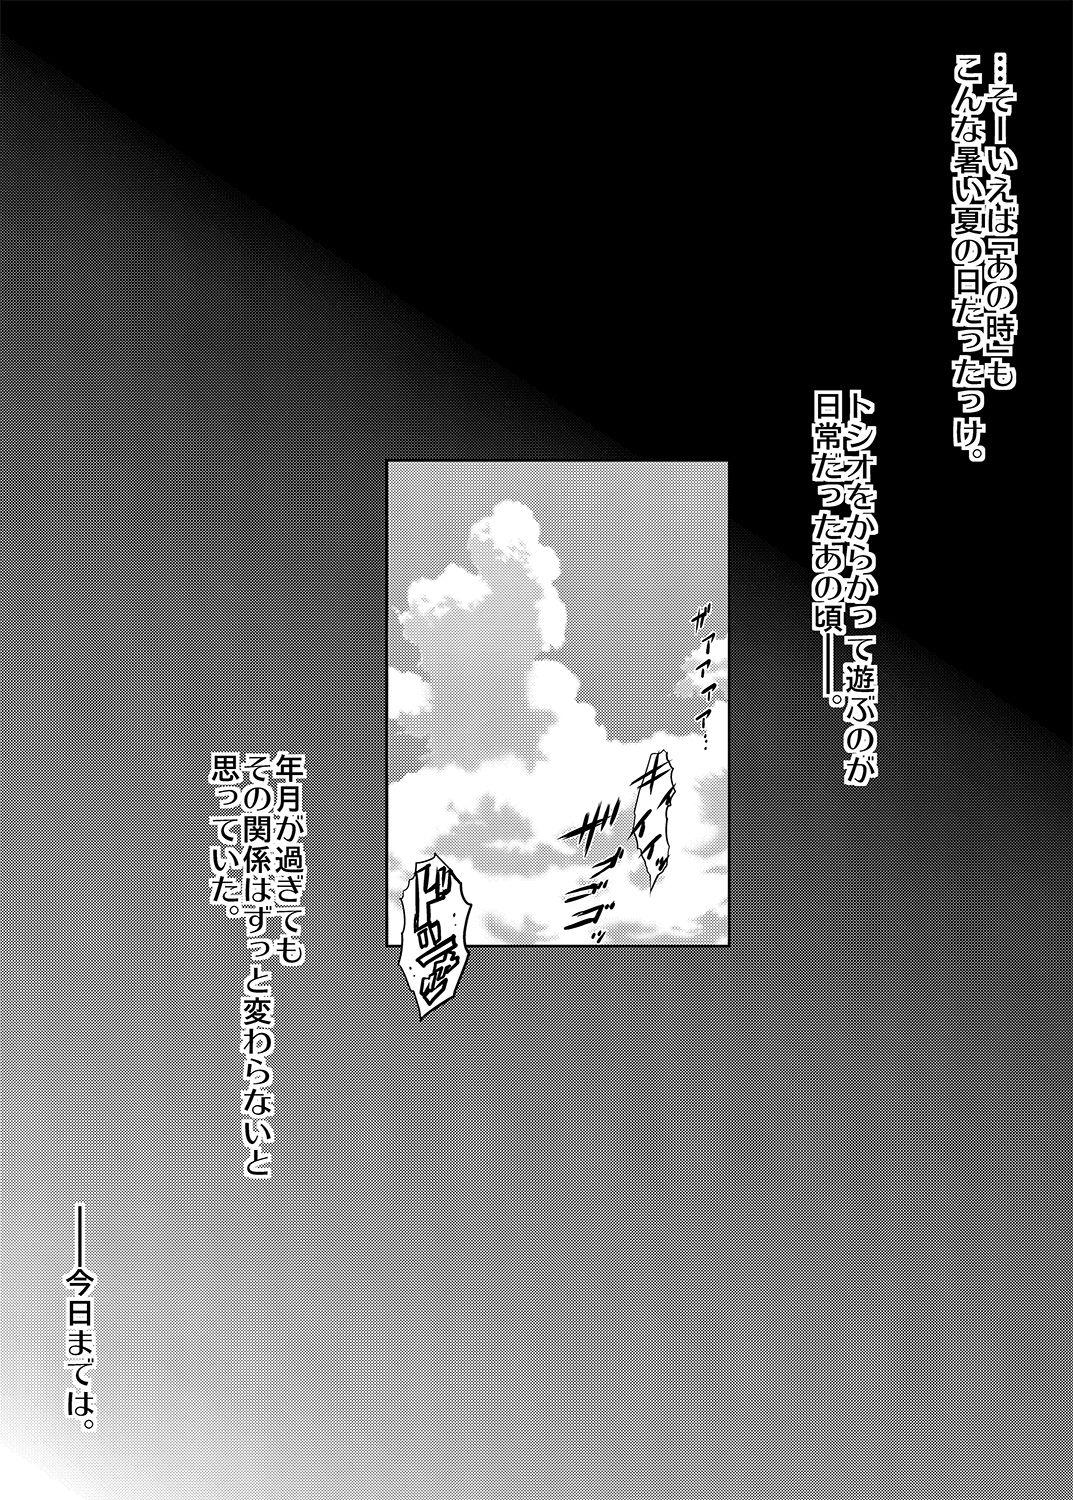 Softcore Mukashi kara Baka ni Shiteita Itoko no Kanninbukuro no O ga Kireta Kekka, Futarikiri no Semai Shanai de Karada o Moteasobareta Natsu no Hi no Koto. Selfie - Page 5